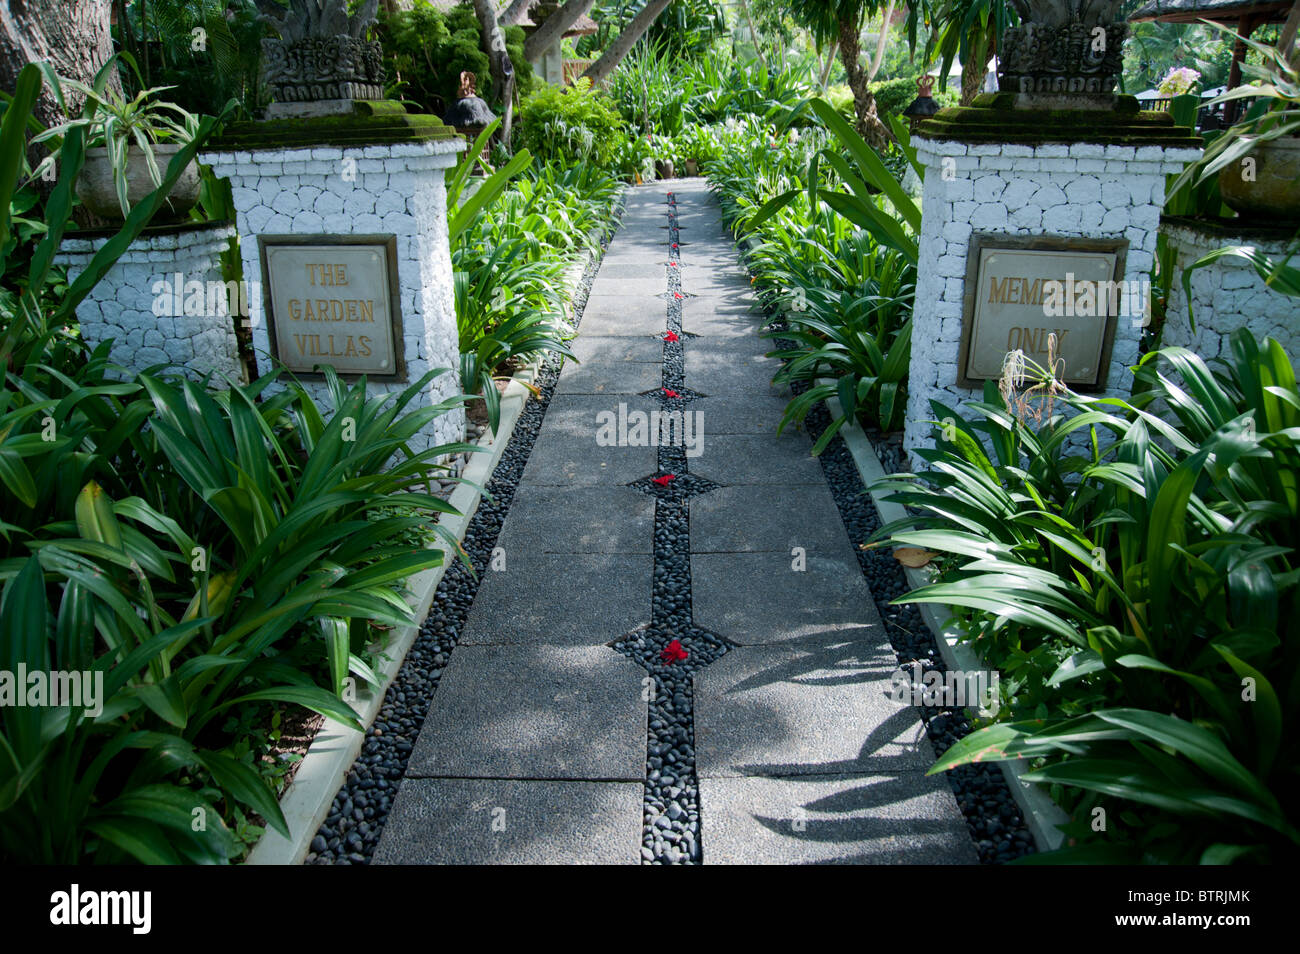 Eingang zum Gelände der Garten Villen im Melia Bali Hotel Nusa Dua Bali Indonesien Stockfoto